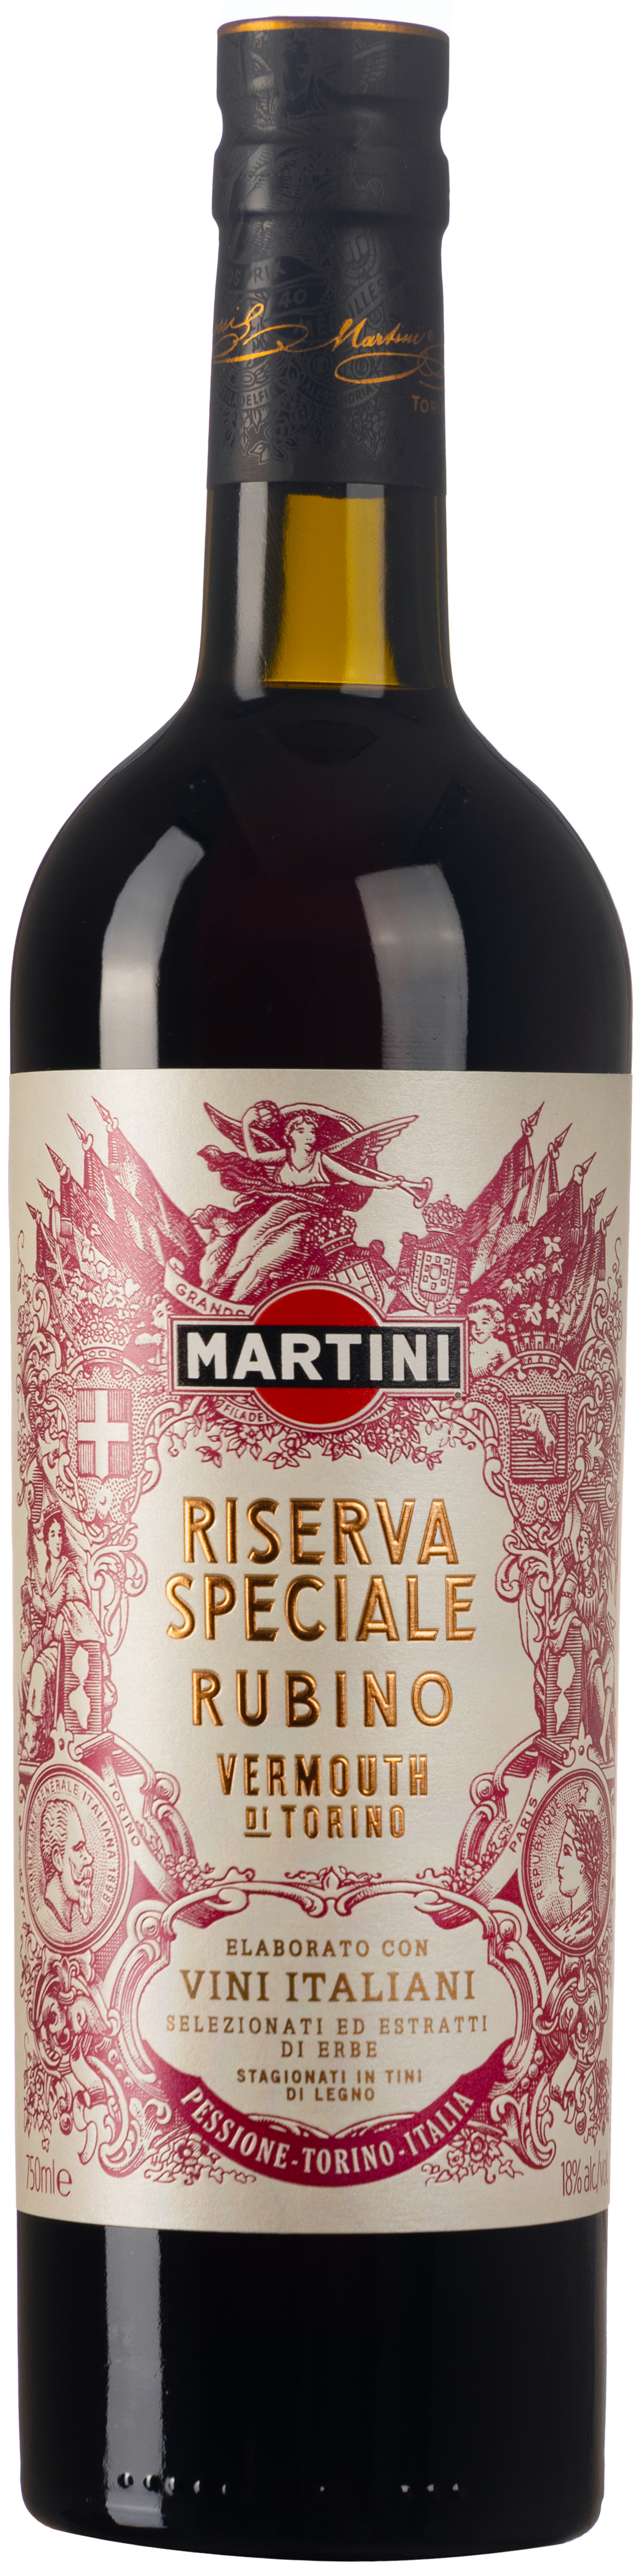 Martini Riserva Rubino 18% vol. 0,75L  